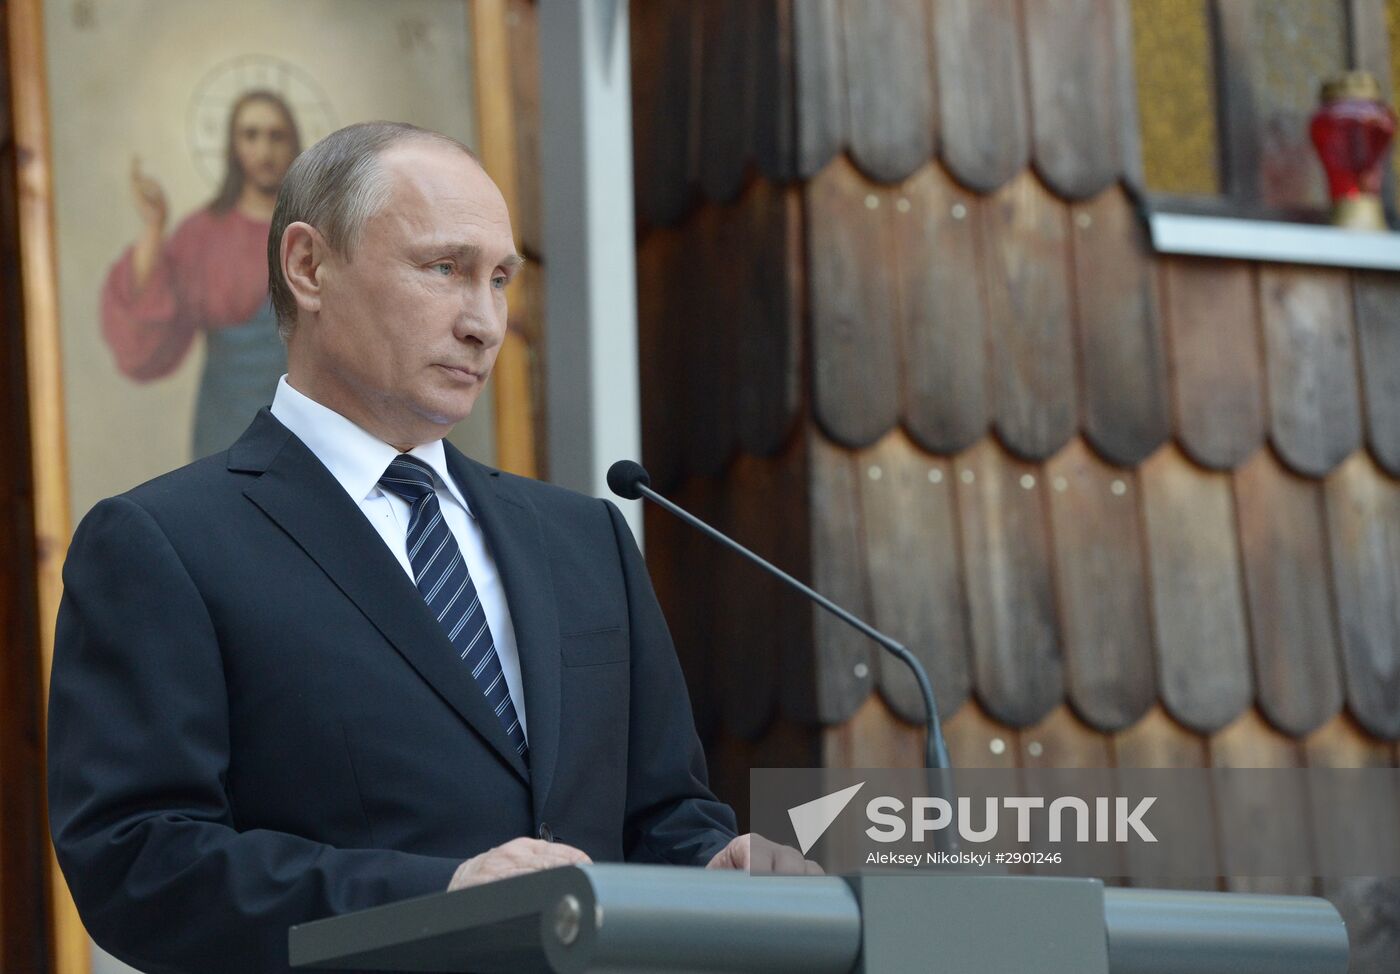 President Putin visits Slovenia